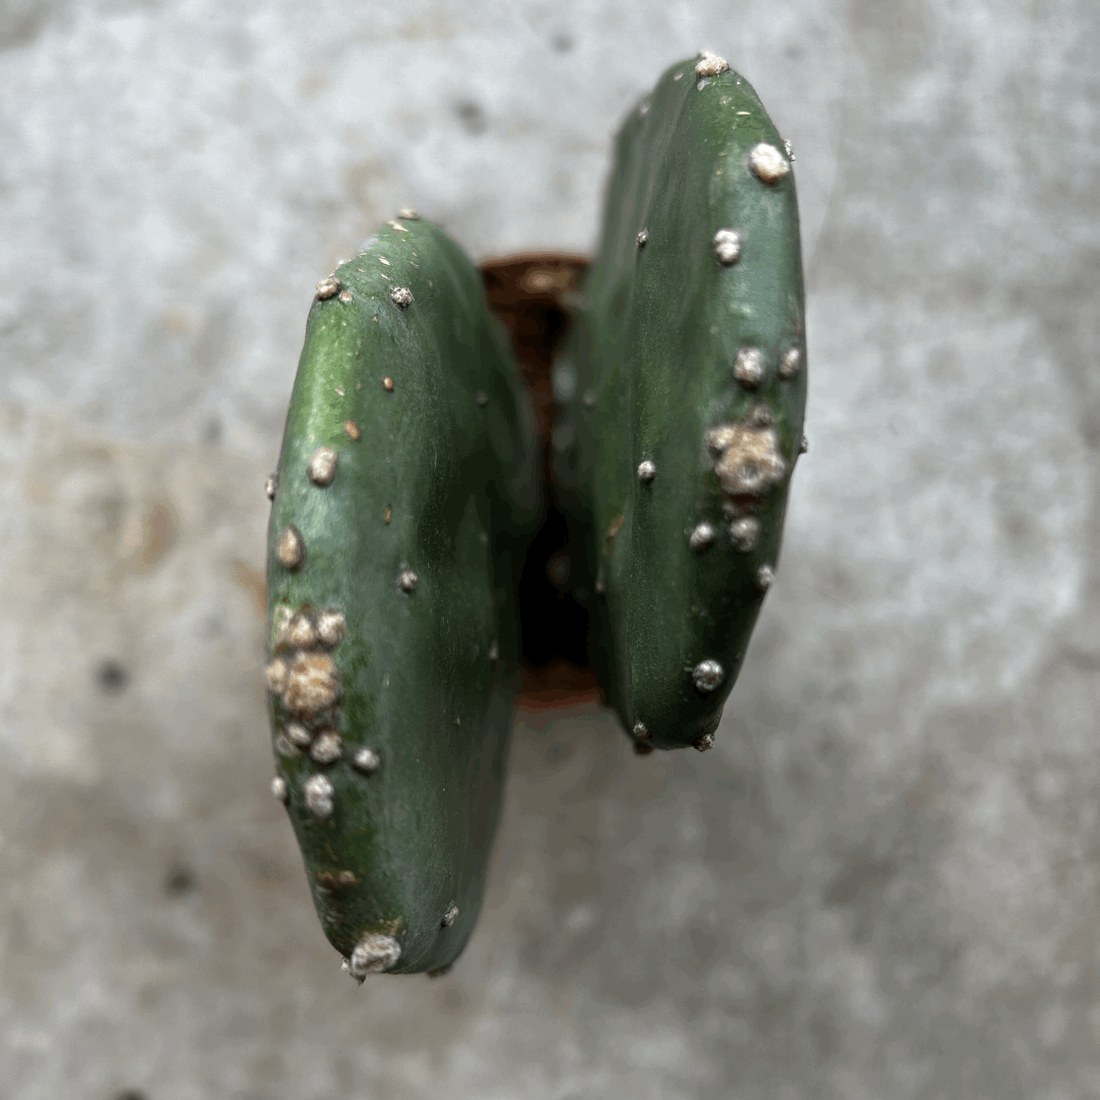 Opuntia cochenillifera (Prickly pear)